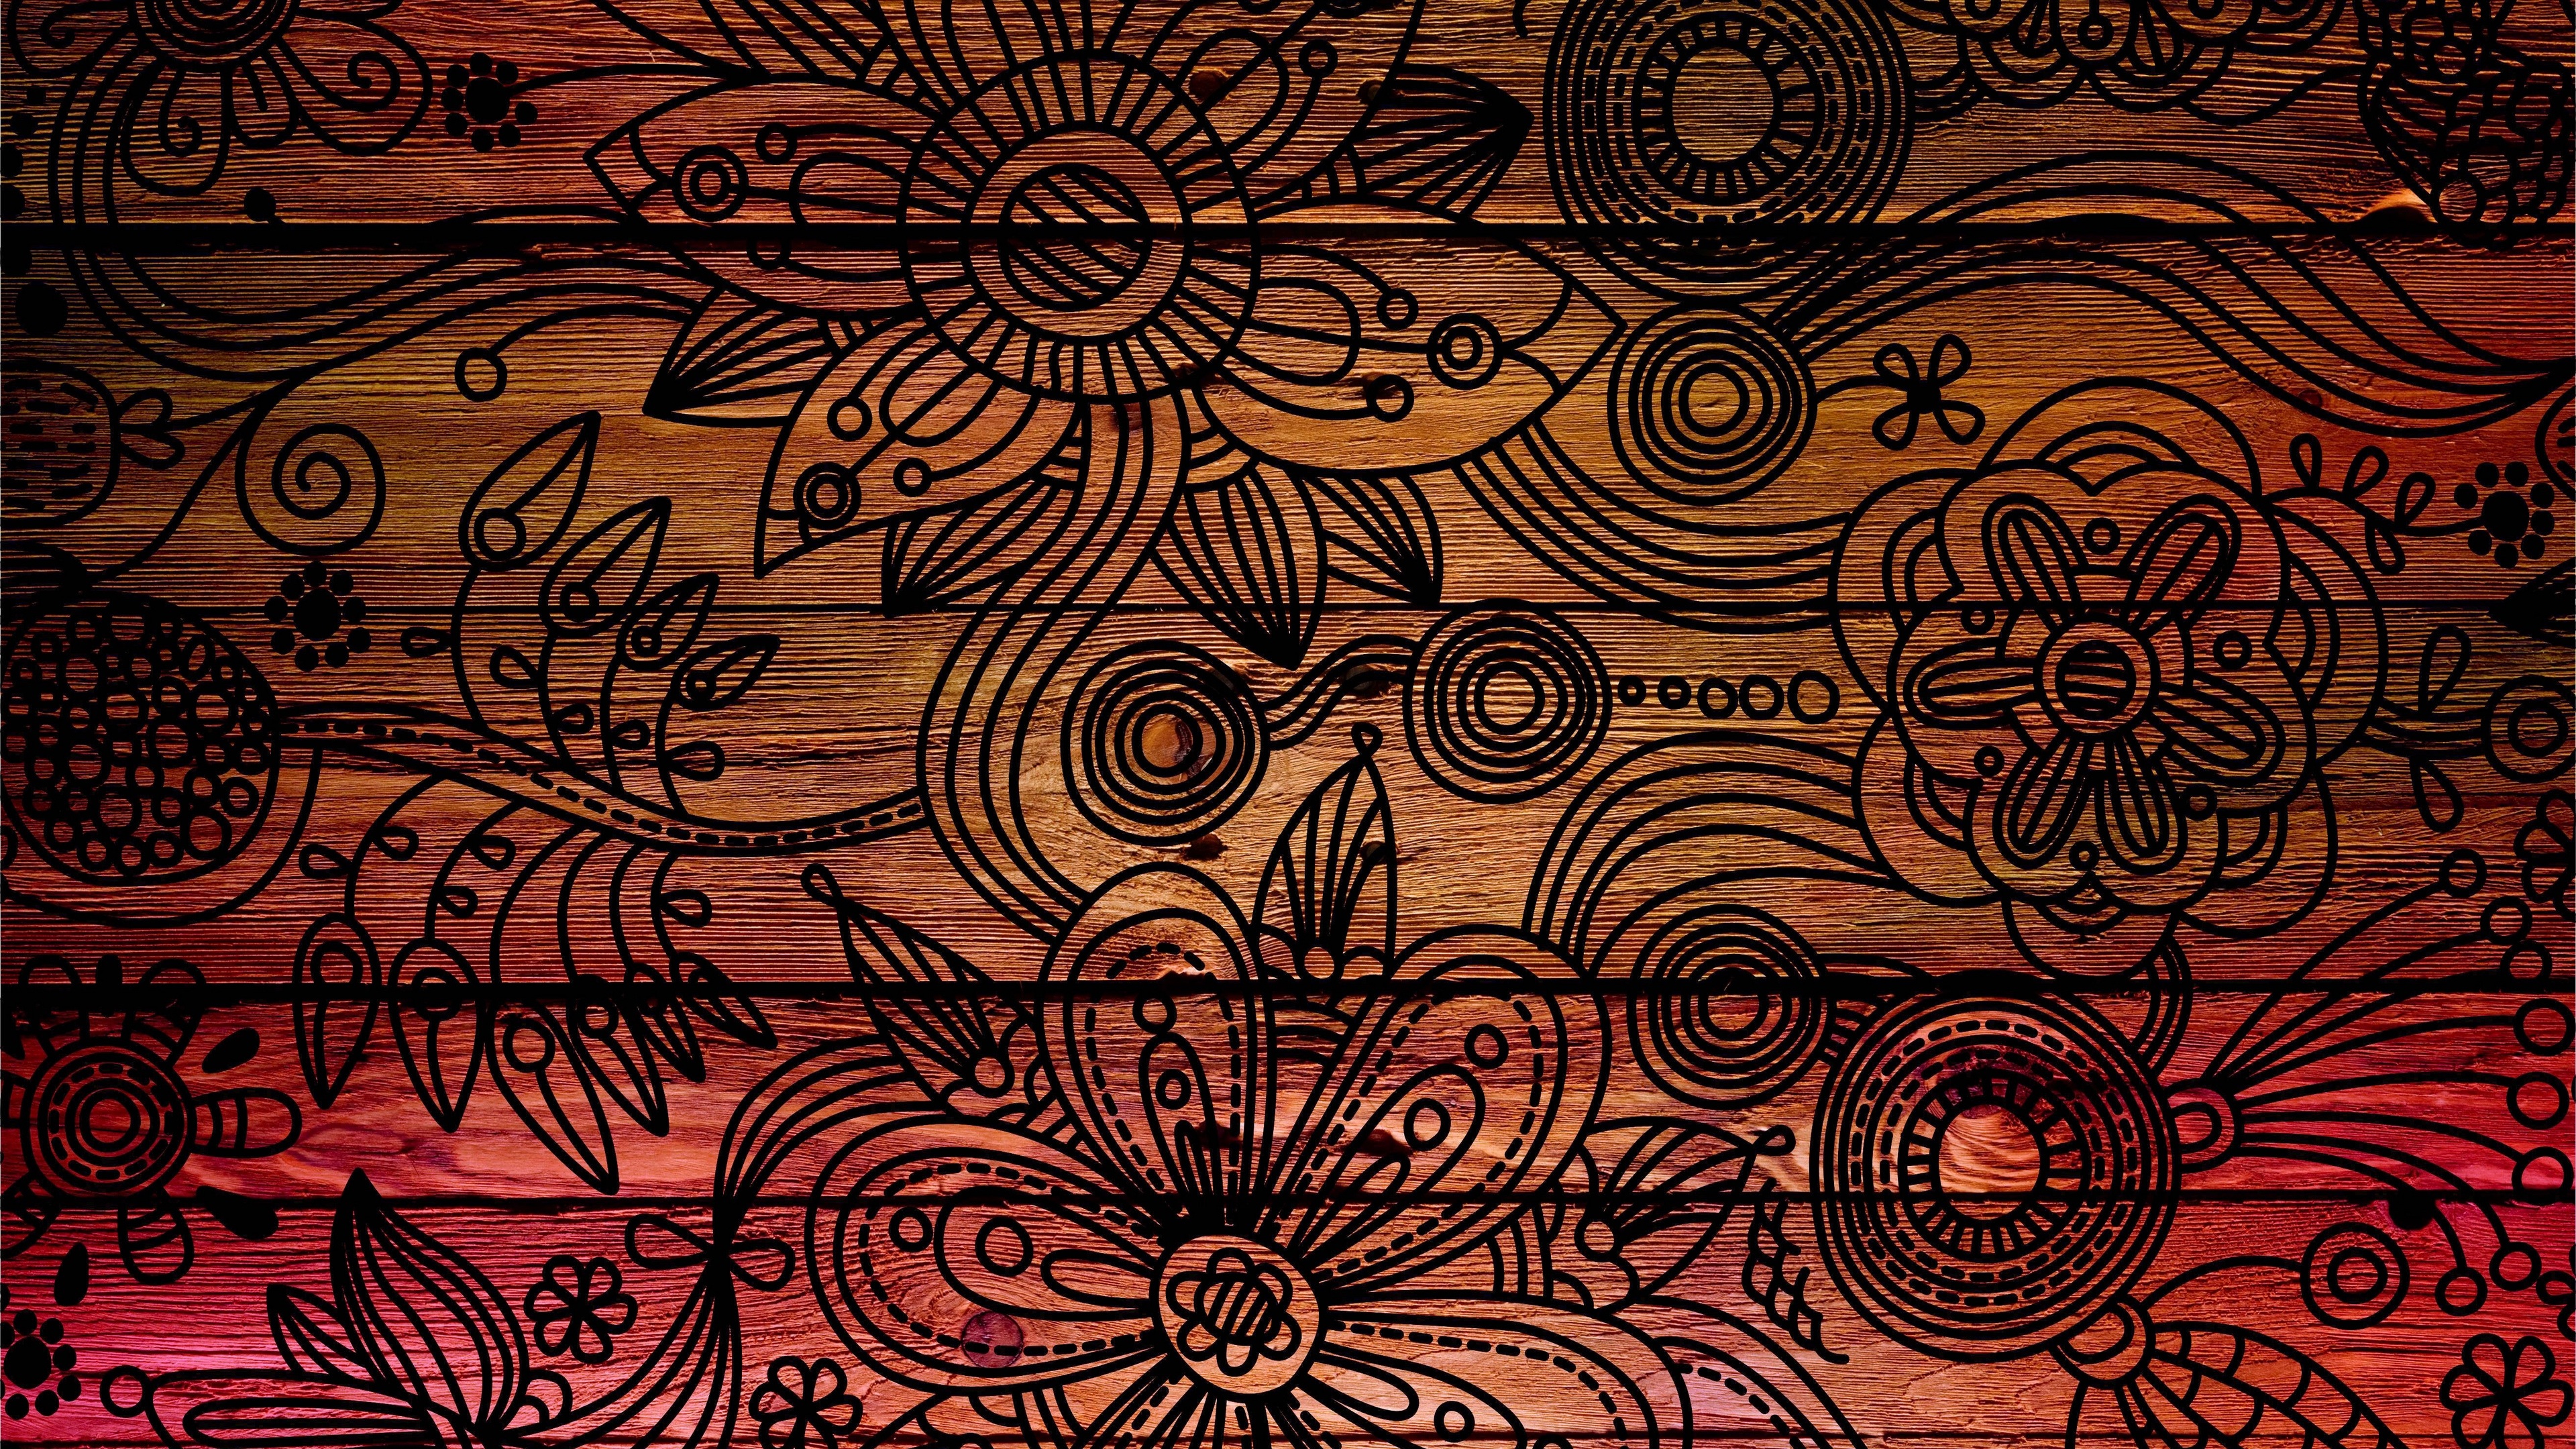 hd wood background pattern